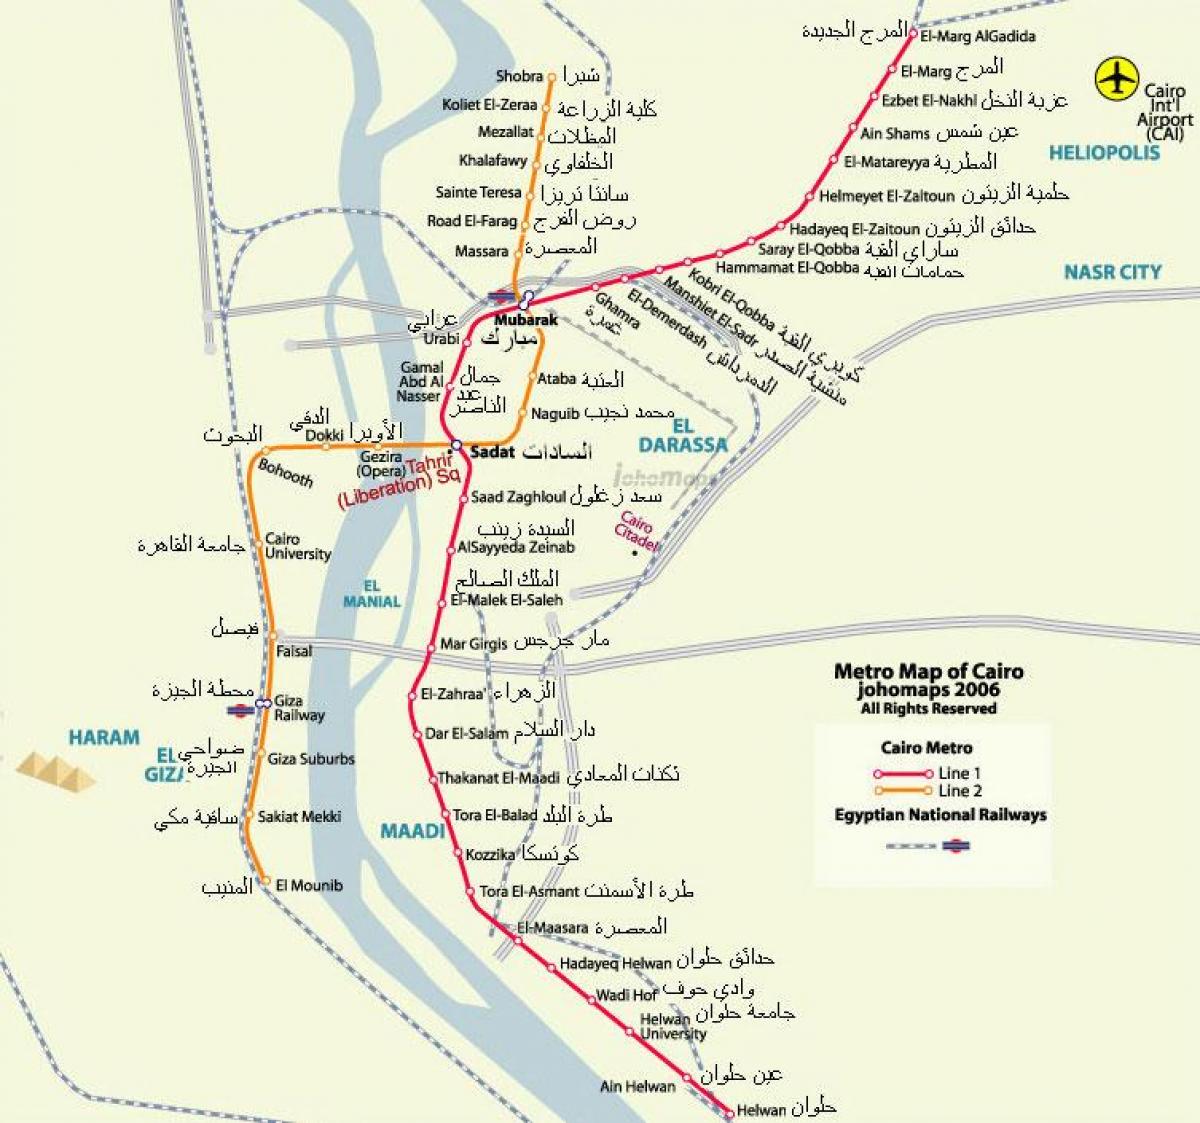 káhira mapa metro 2016